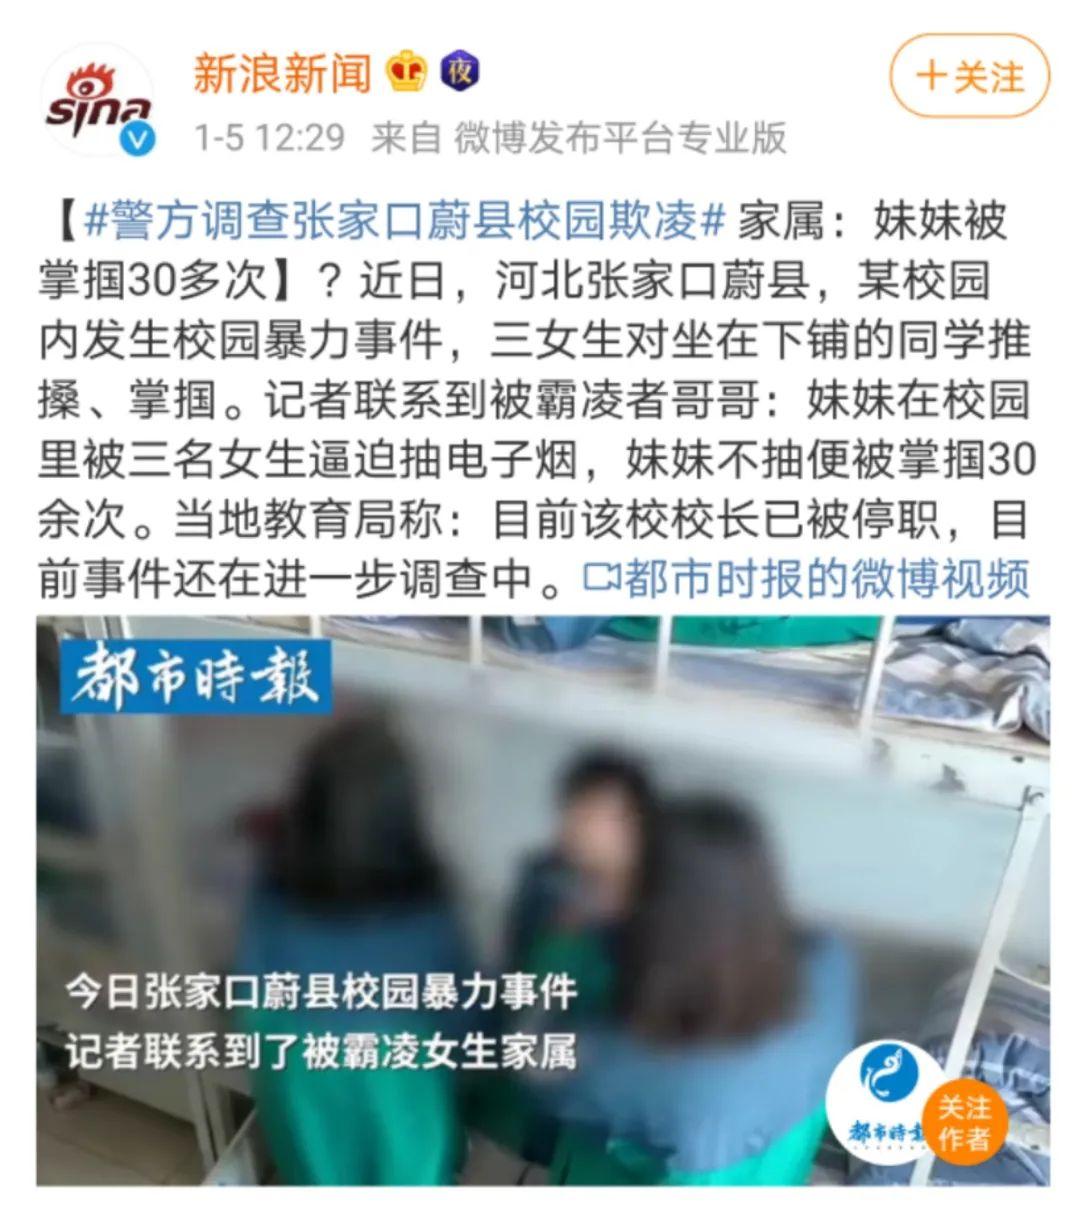 家人智能发现张家口蔚县初中又现校园暴力事件情结恶劣校长已被停职